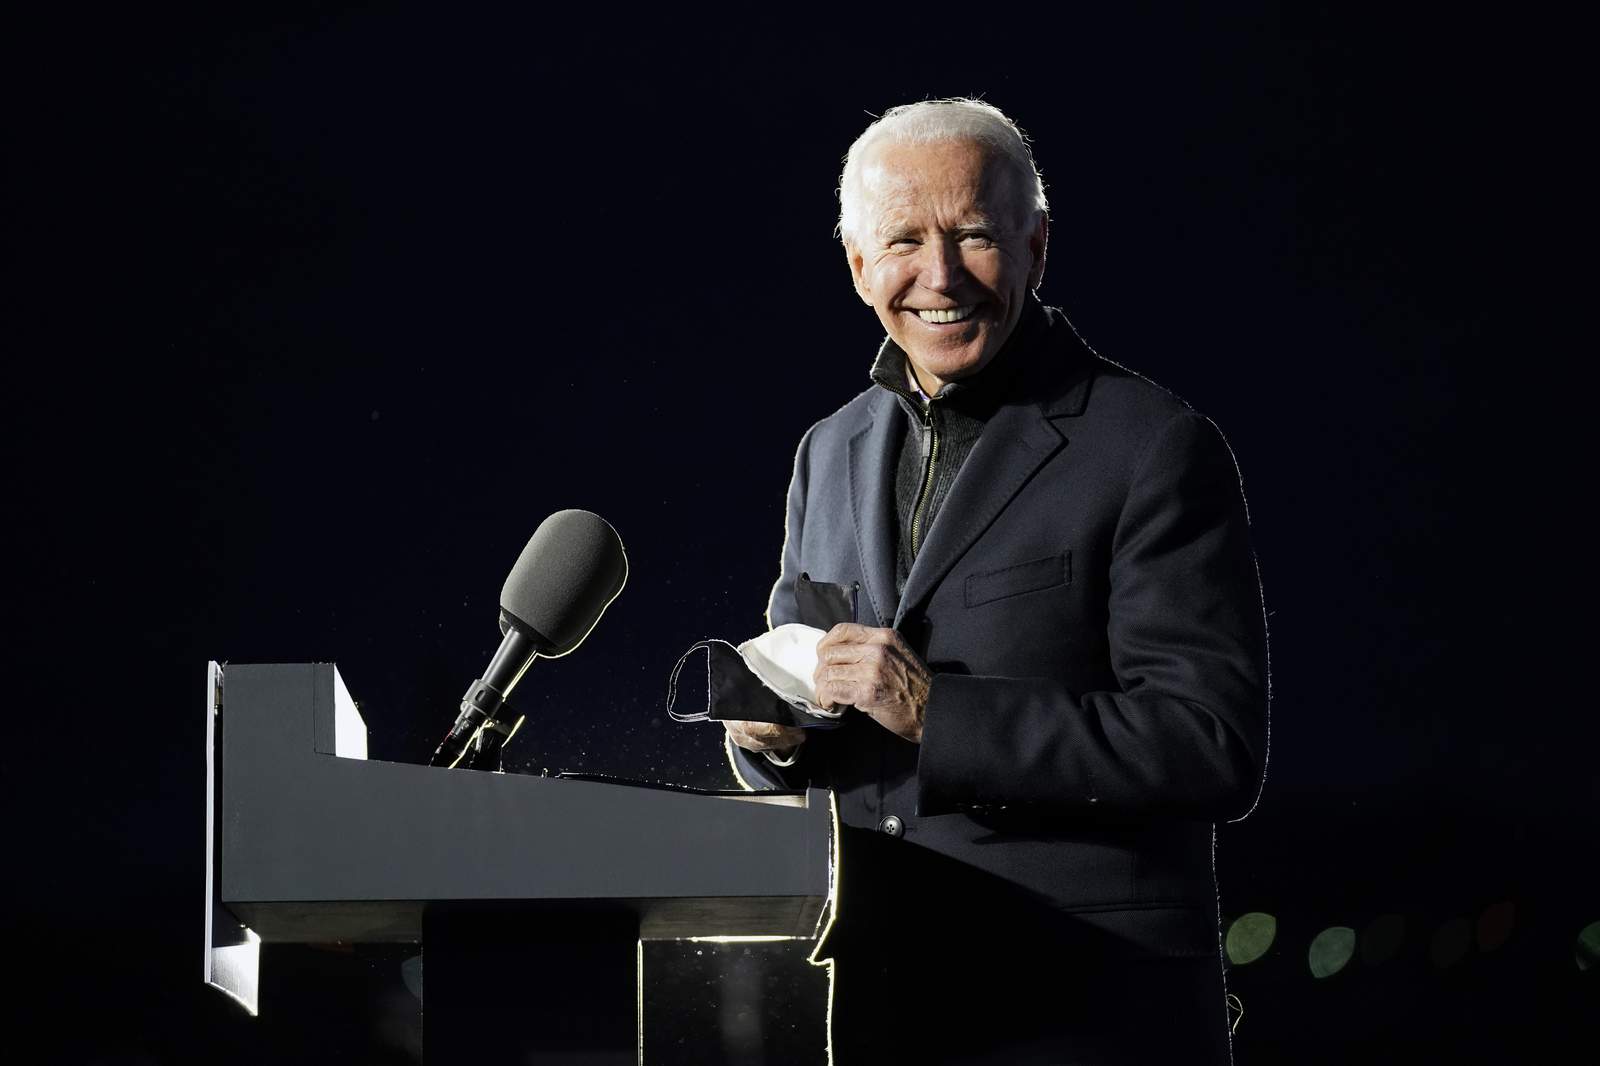 AP Projects: Joe Biden wins Rhode Island in presidential election